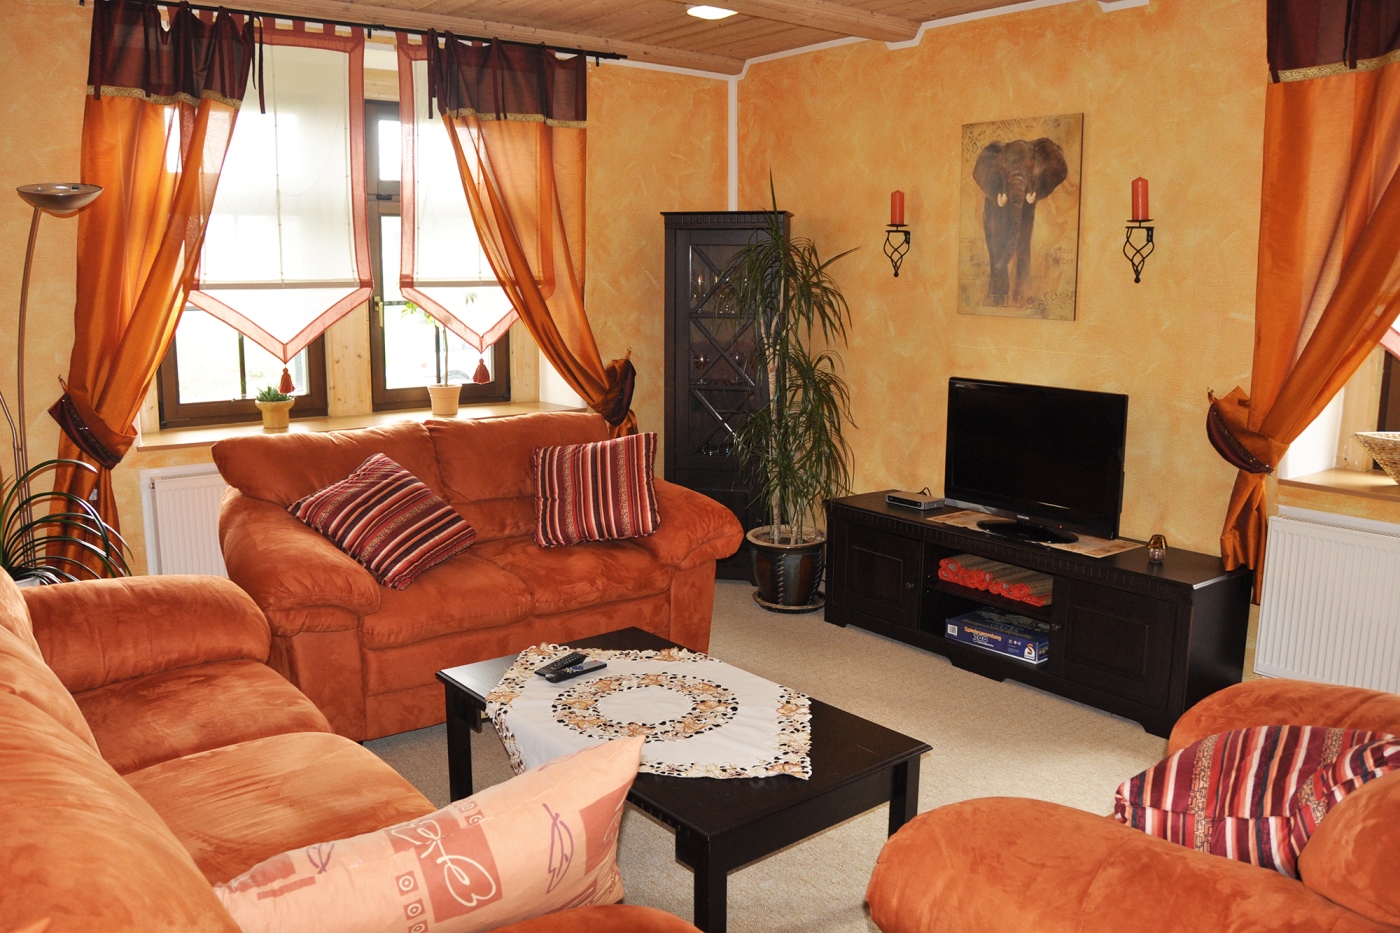 In einem hell gestrichenen Zimmer stehen dunkle Möbel und orange Sofas und Sessel. Die Einrichtung ist aufeinander abgestimmt und schafft ein gemütliches und warmes Ambiente.